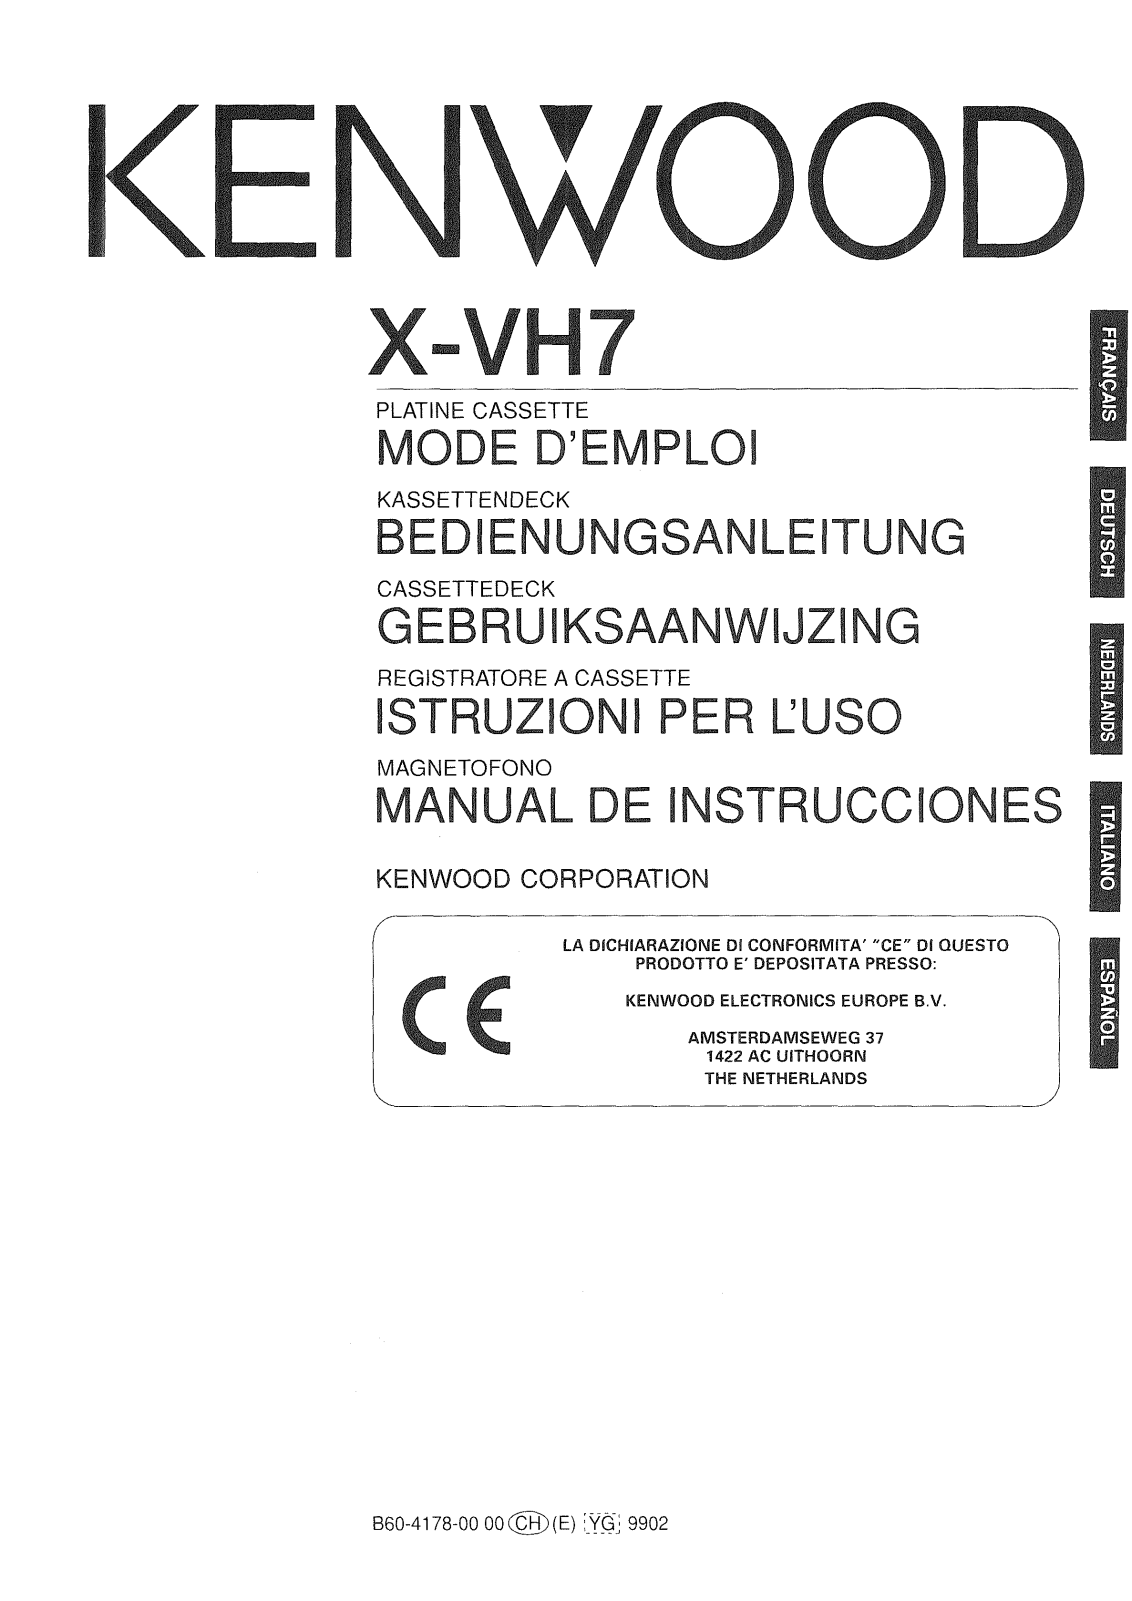 KENWOOD X-VH7 User Manual